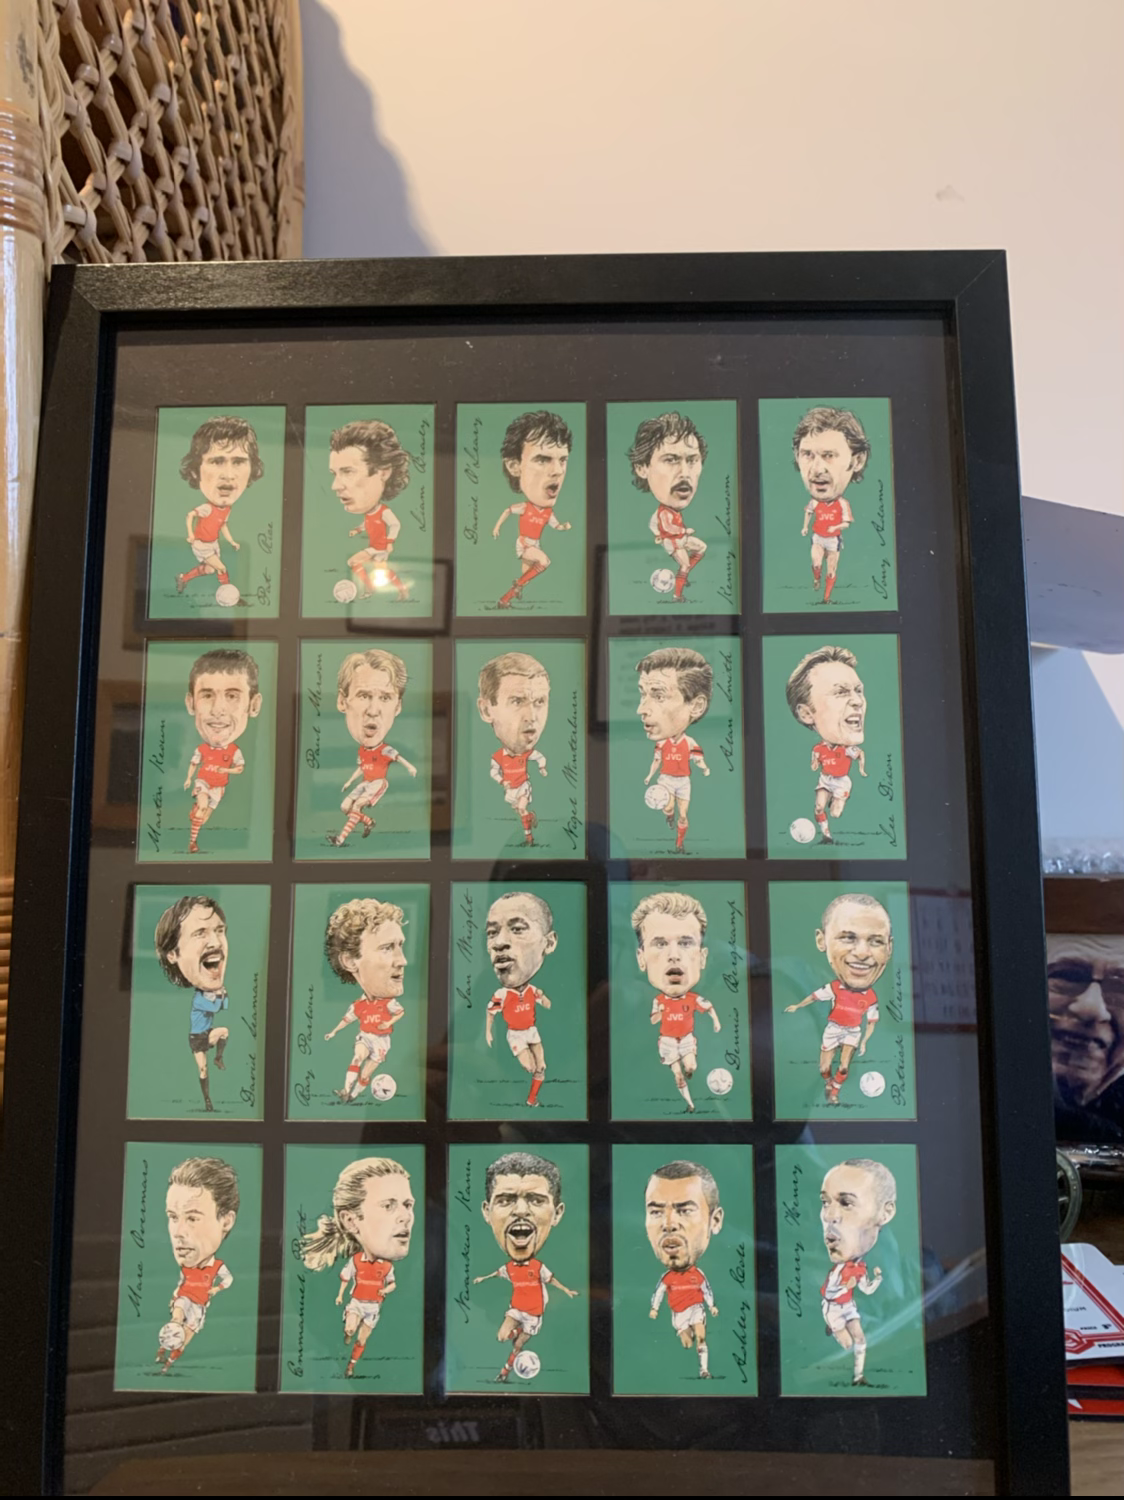 Arsenal legends card frame